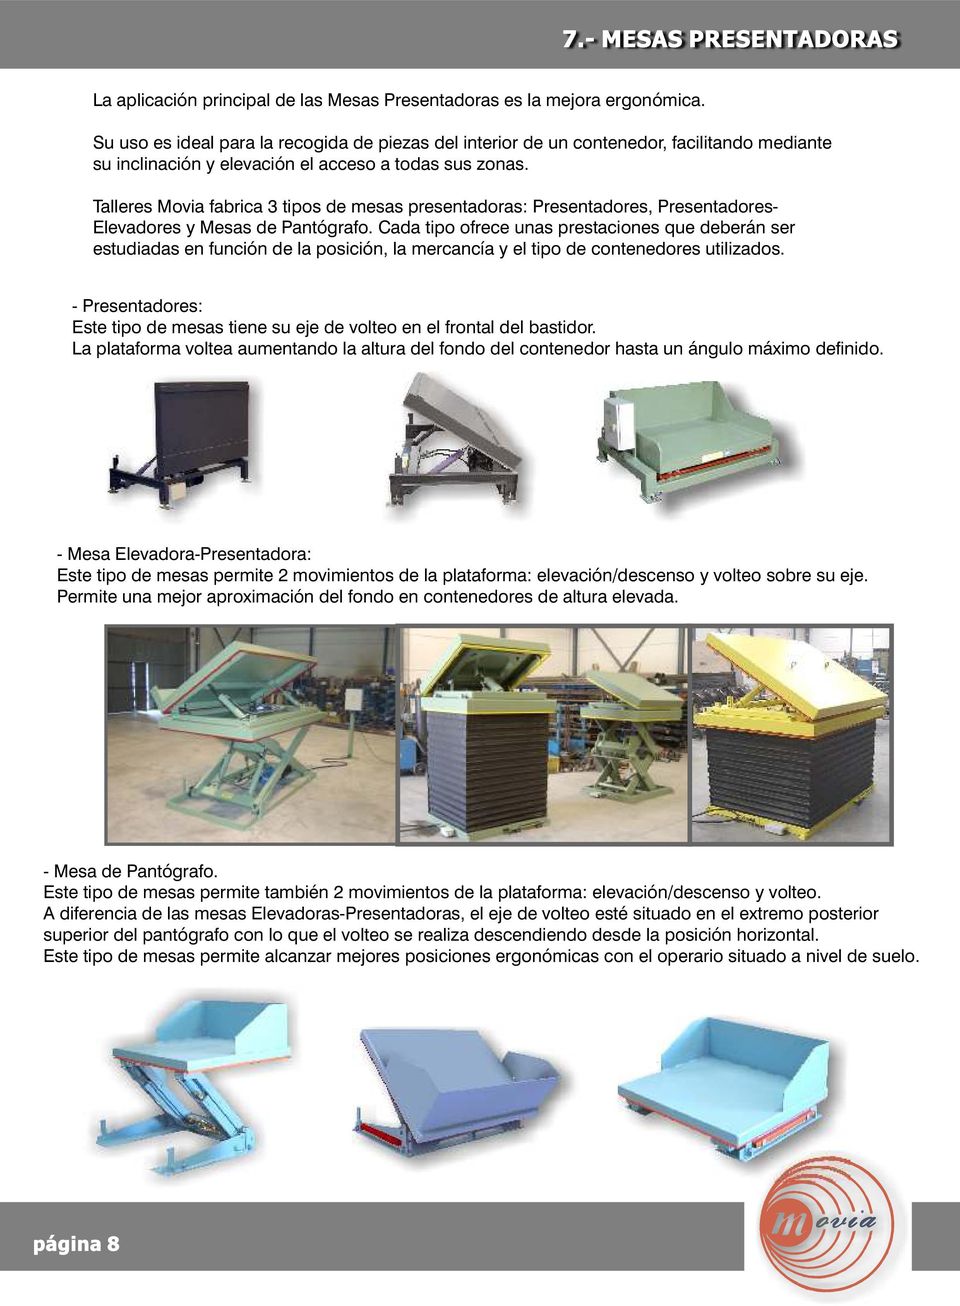 Talleres Movia fabrica 3 tipos de mesas presentadoras: Presentadores, Presentadores- Elevadores y Mesas de Pantógrafo.